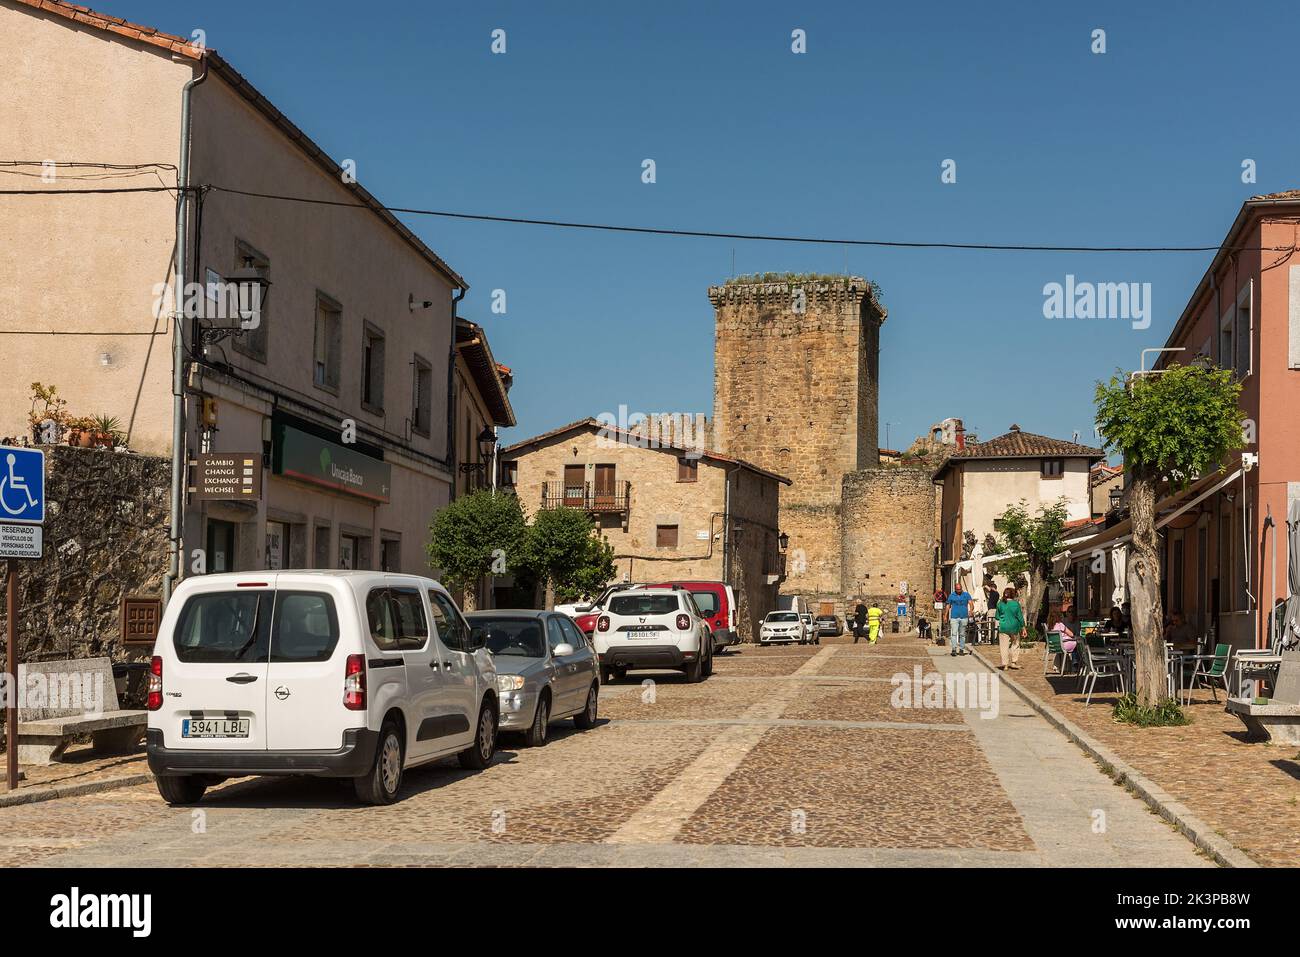 El centro histórico de Miranda del castanar, Salamanca, Castilla y León, España Foto de stock